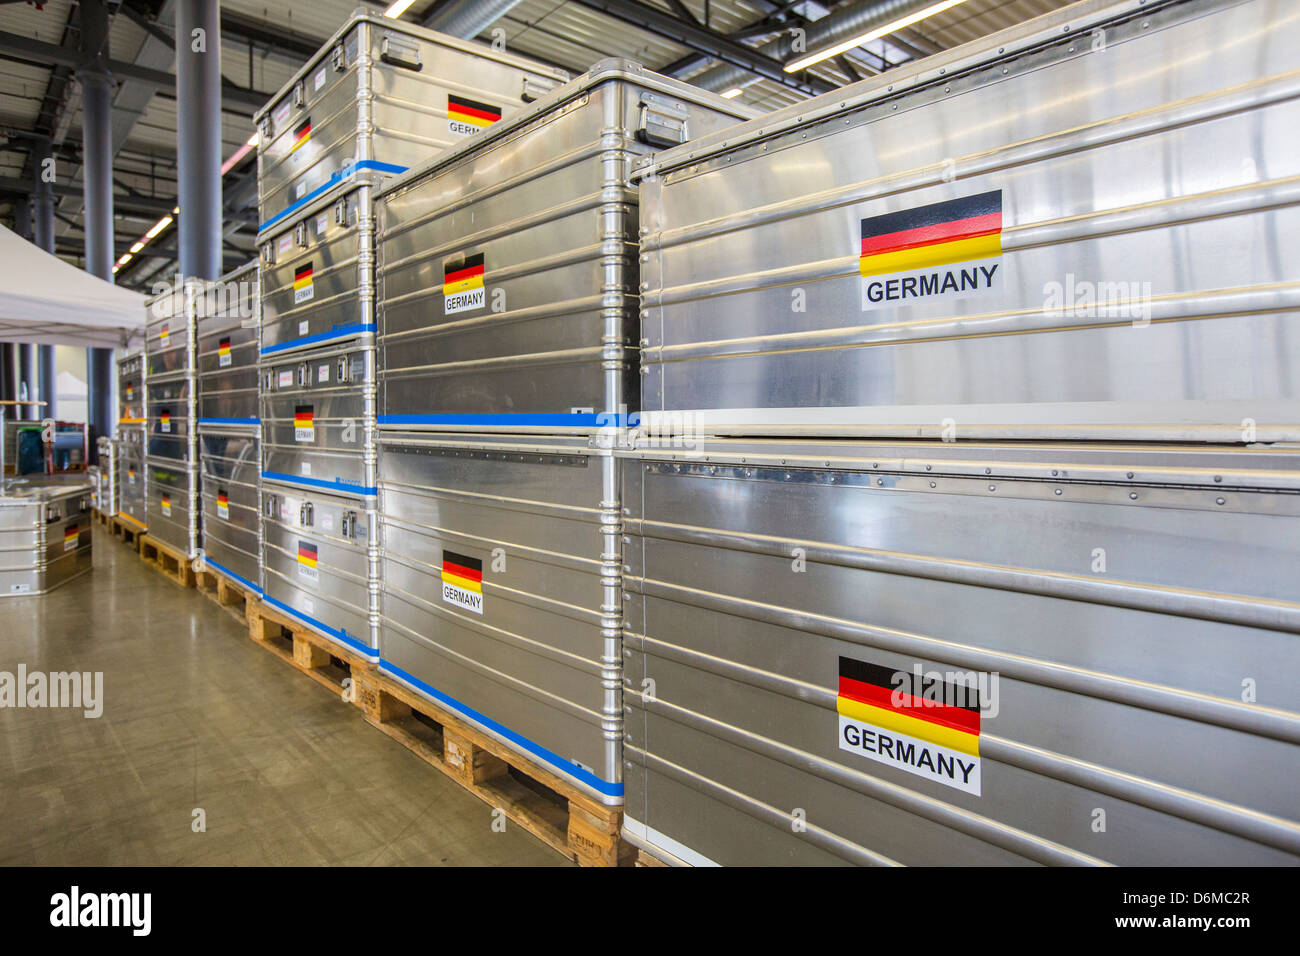 Aluminium-Transportboxen für Notfallausrüstung. Deutsche Flagge. Deutsche Disaster Relief Team-Einheit, THW. Stockfoto